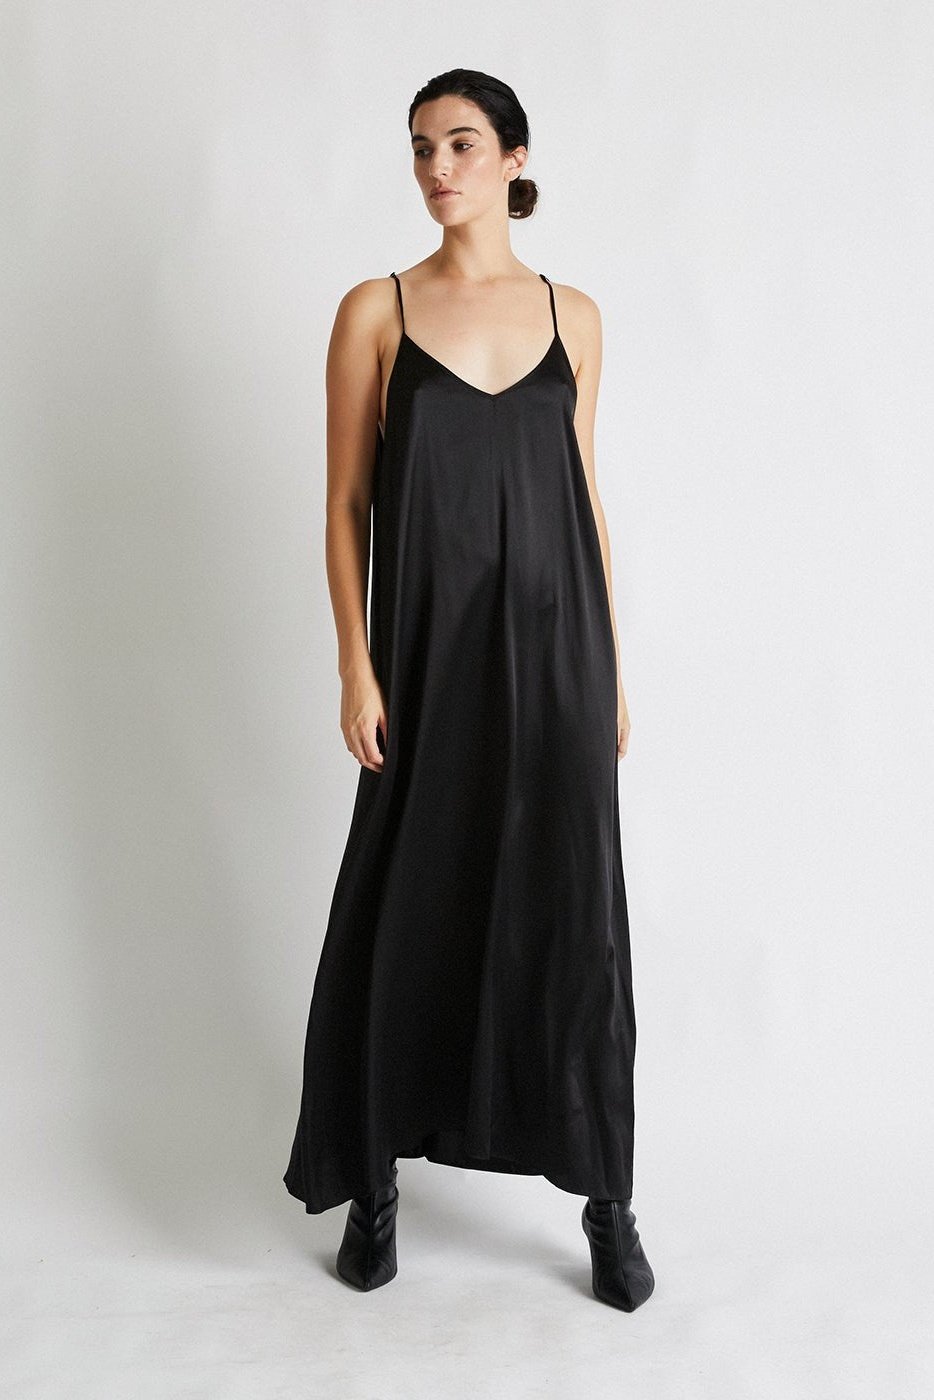 +Beryll Silk Dress Julie | Black - +Beryll Silk Dress Julie | Black - +Beryll Worn By Good People